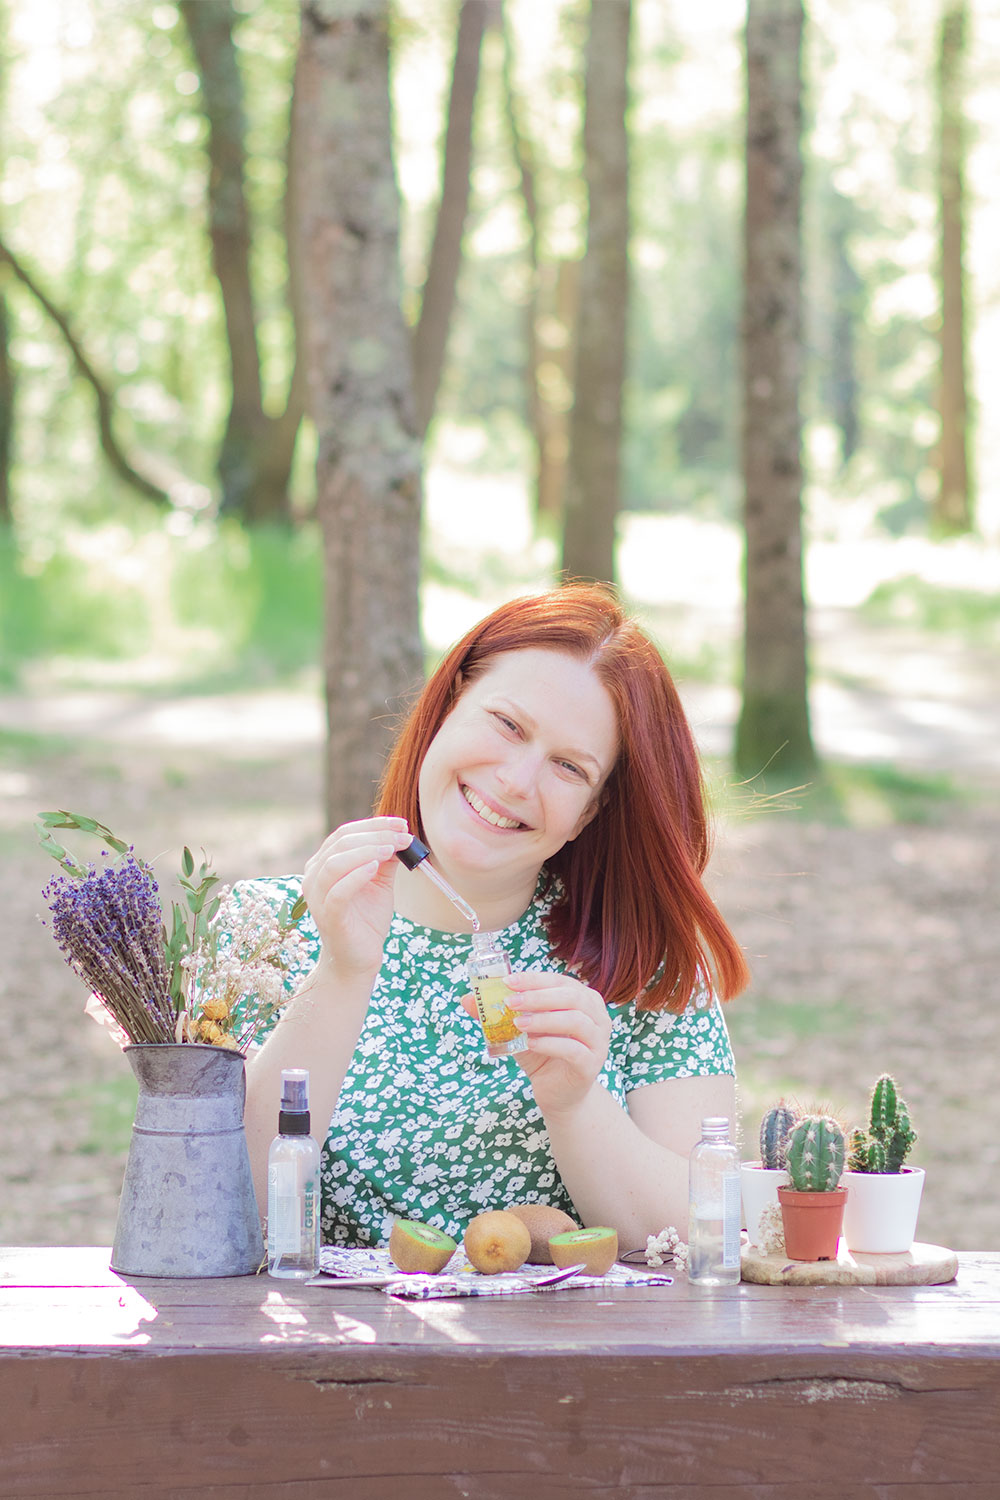 Utilisation de l'huile nourrissante visage de Marionnaud sur une table en bois au milieu des bois, en t-shirt vert fleuri avec le sourire